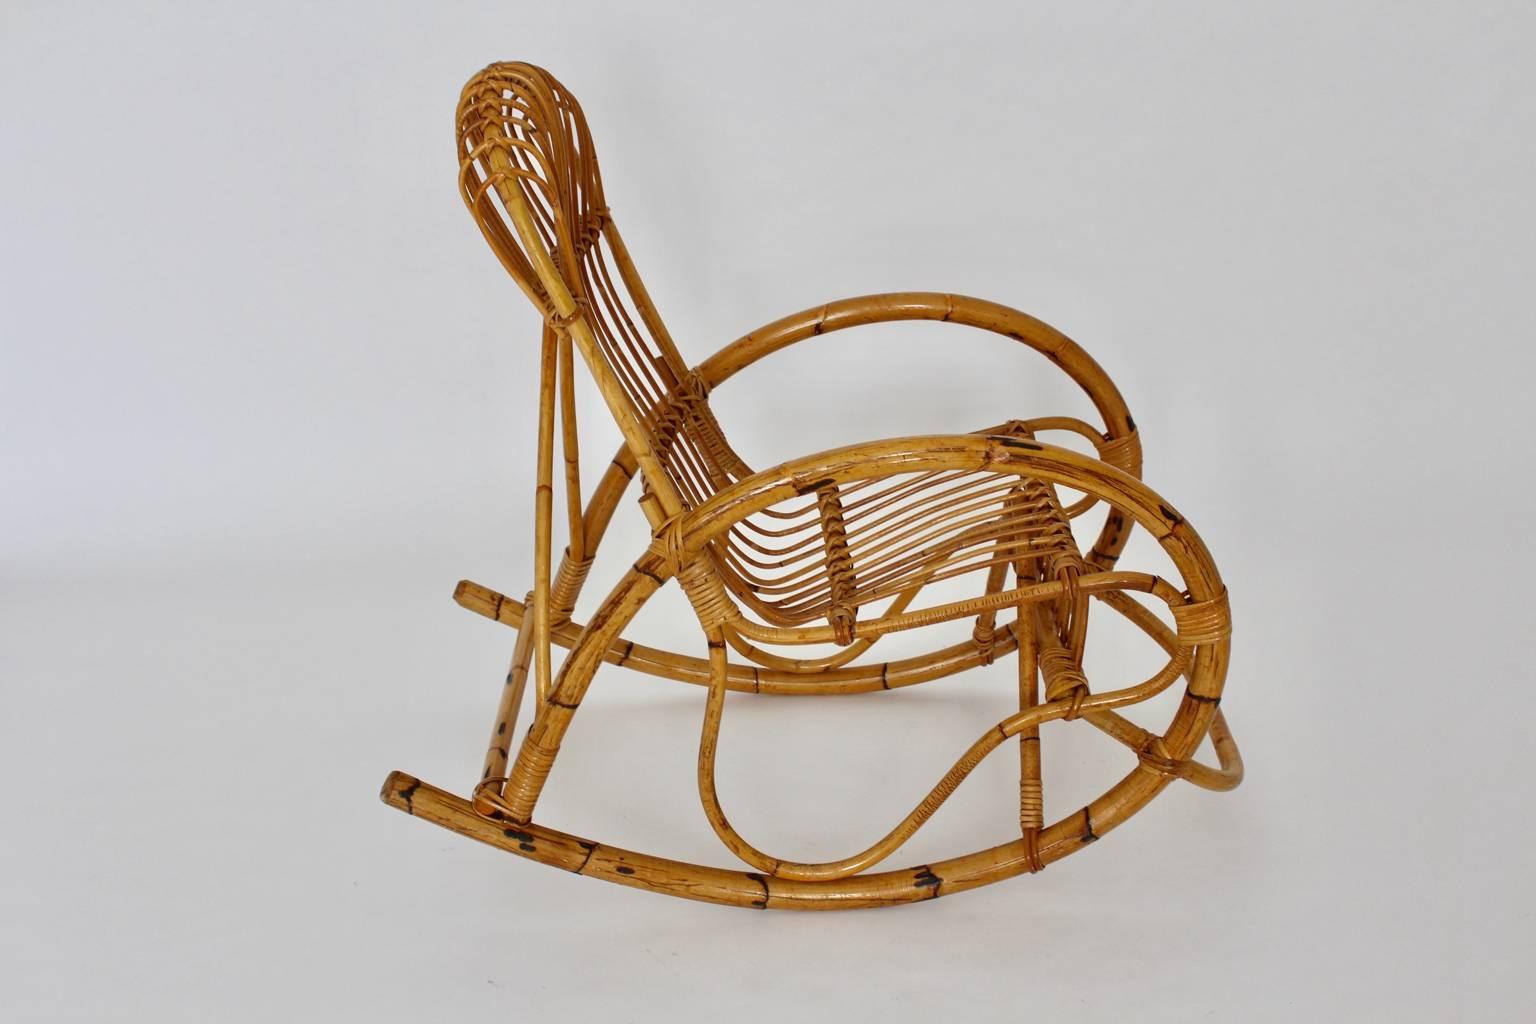 Fauteuil à bascule organique vintage de style Riviera en bambou rotin Italie années 1960.
Le rocking-chair sculptural présente une forme superbe avec des accoudoirs incurvés de forme ovale, qui se fondent dans la roue à tige de bambou, tandis que la